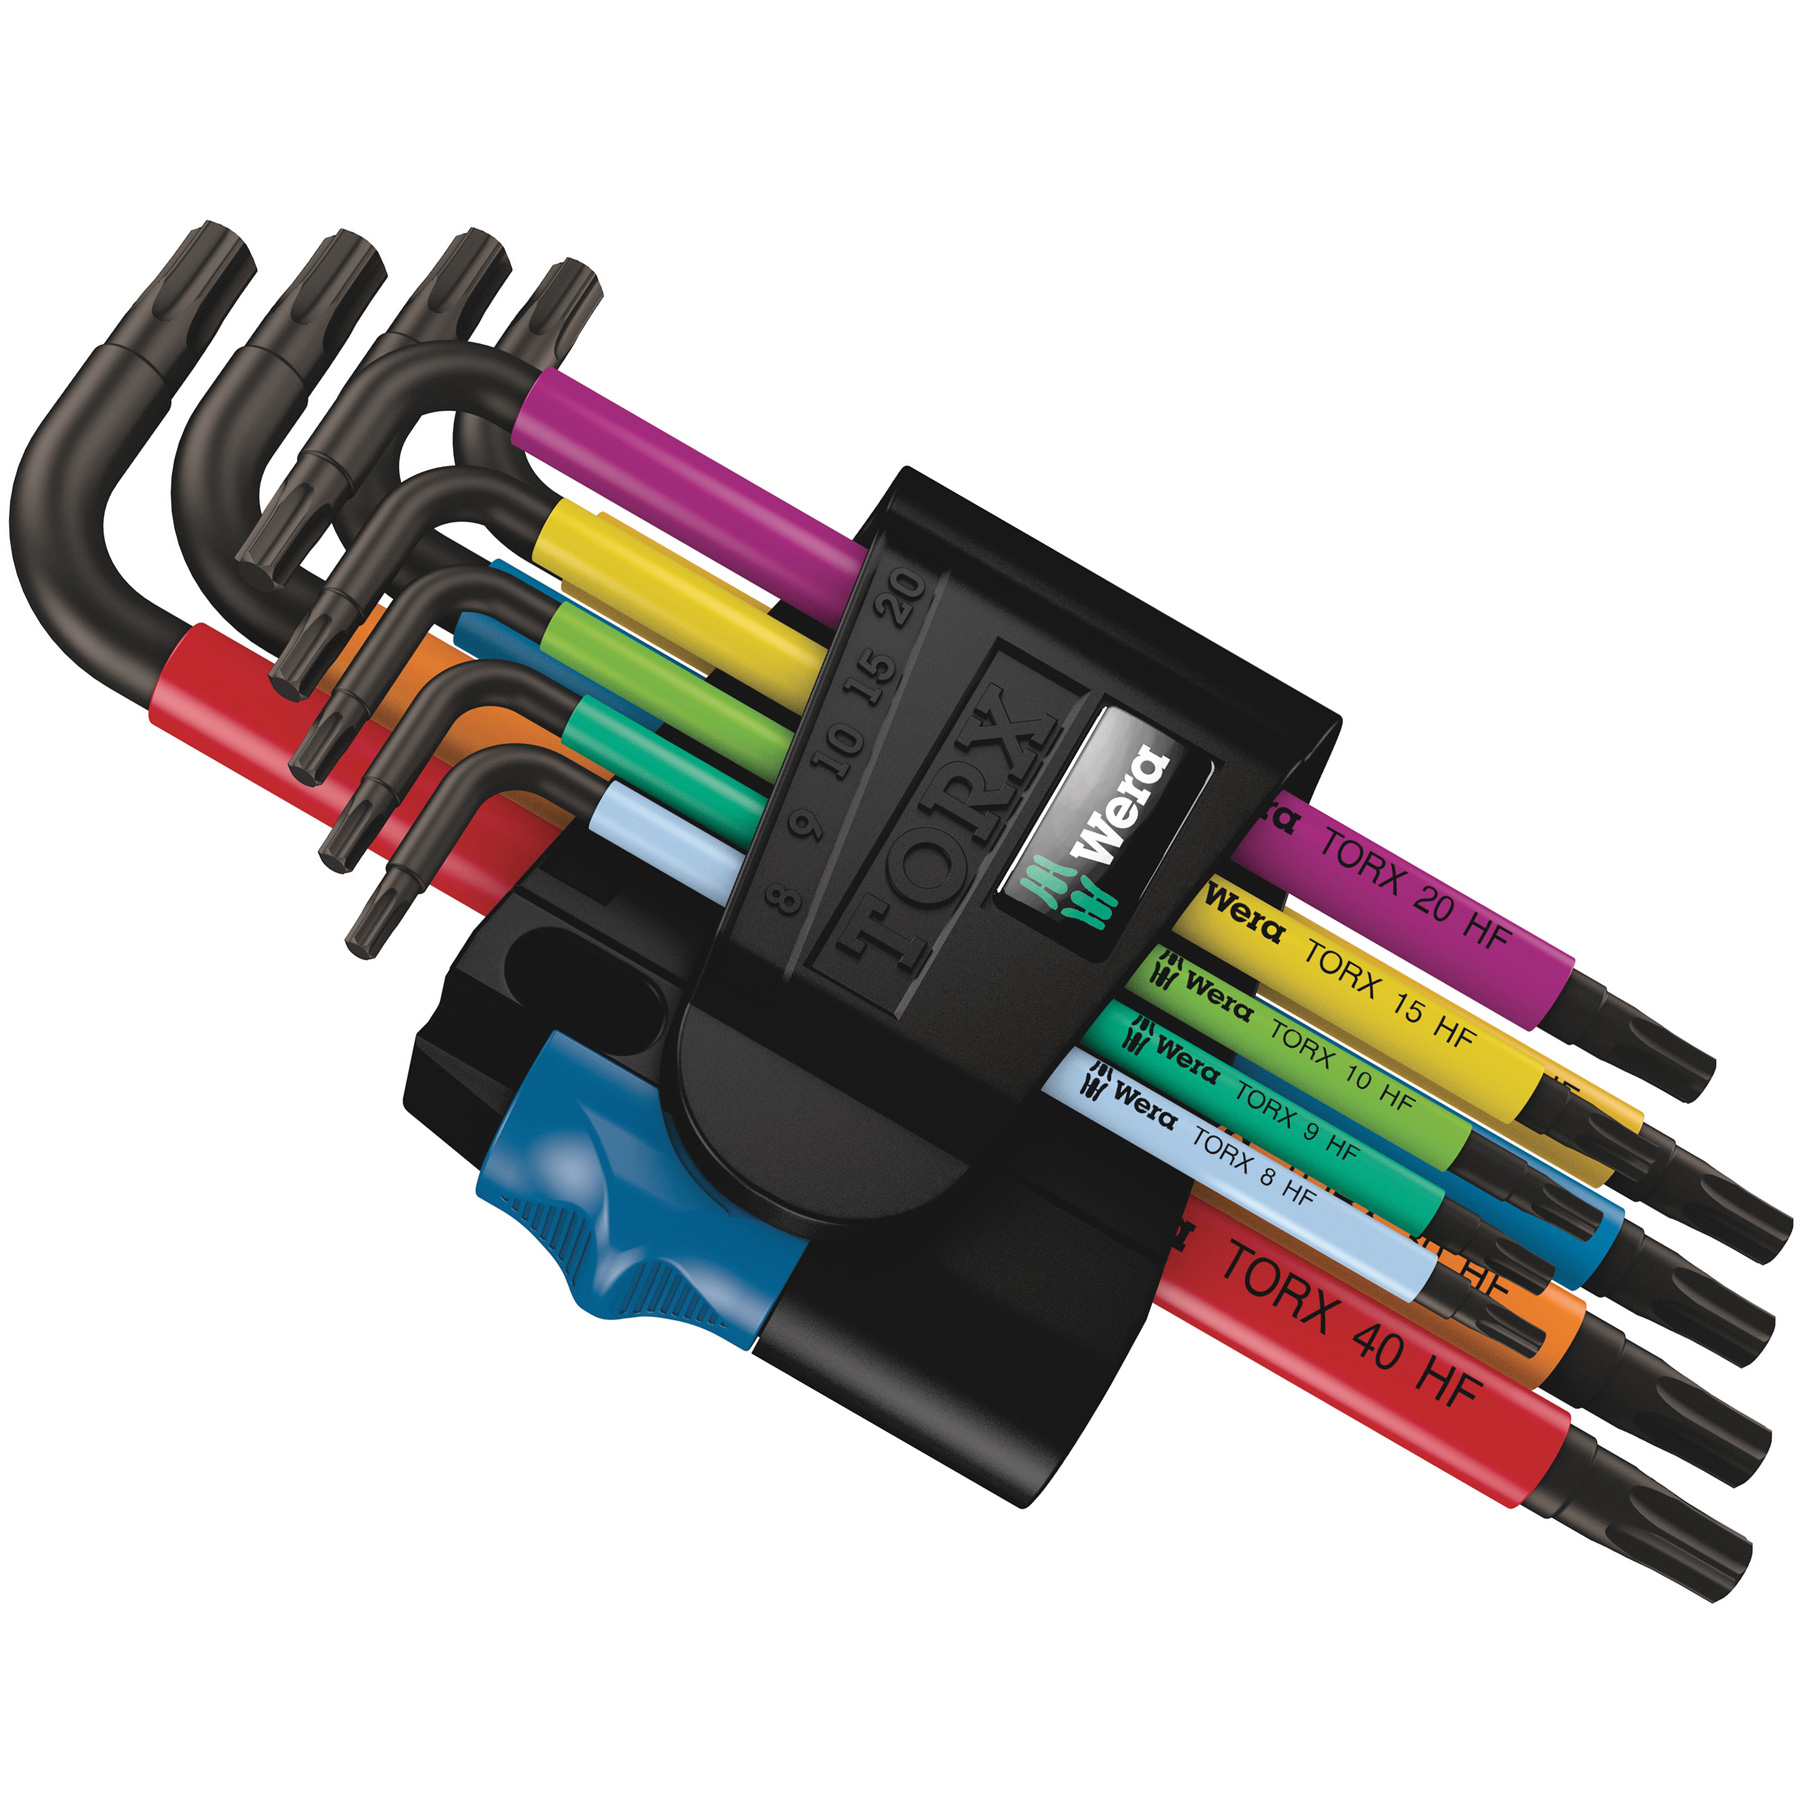 Productfoto van Wera 967/9 TX Multicolour HF 1 - TORX® Stiftsleutelset met Vasthoudfunctie - 9-delig